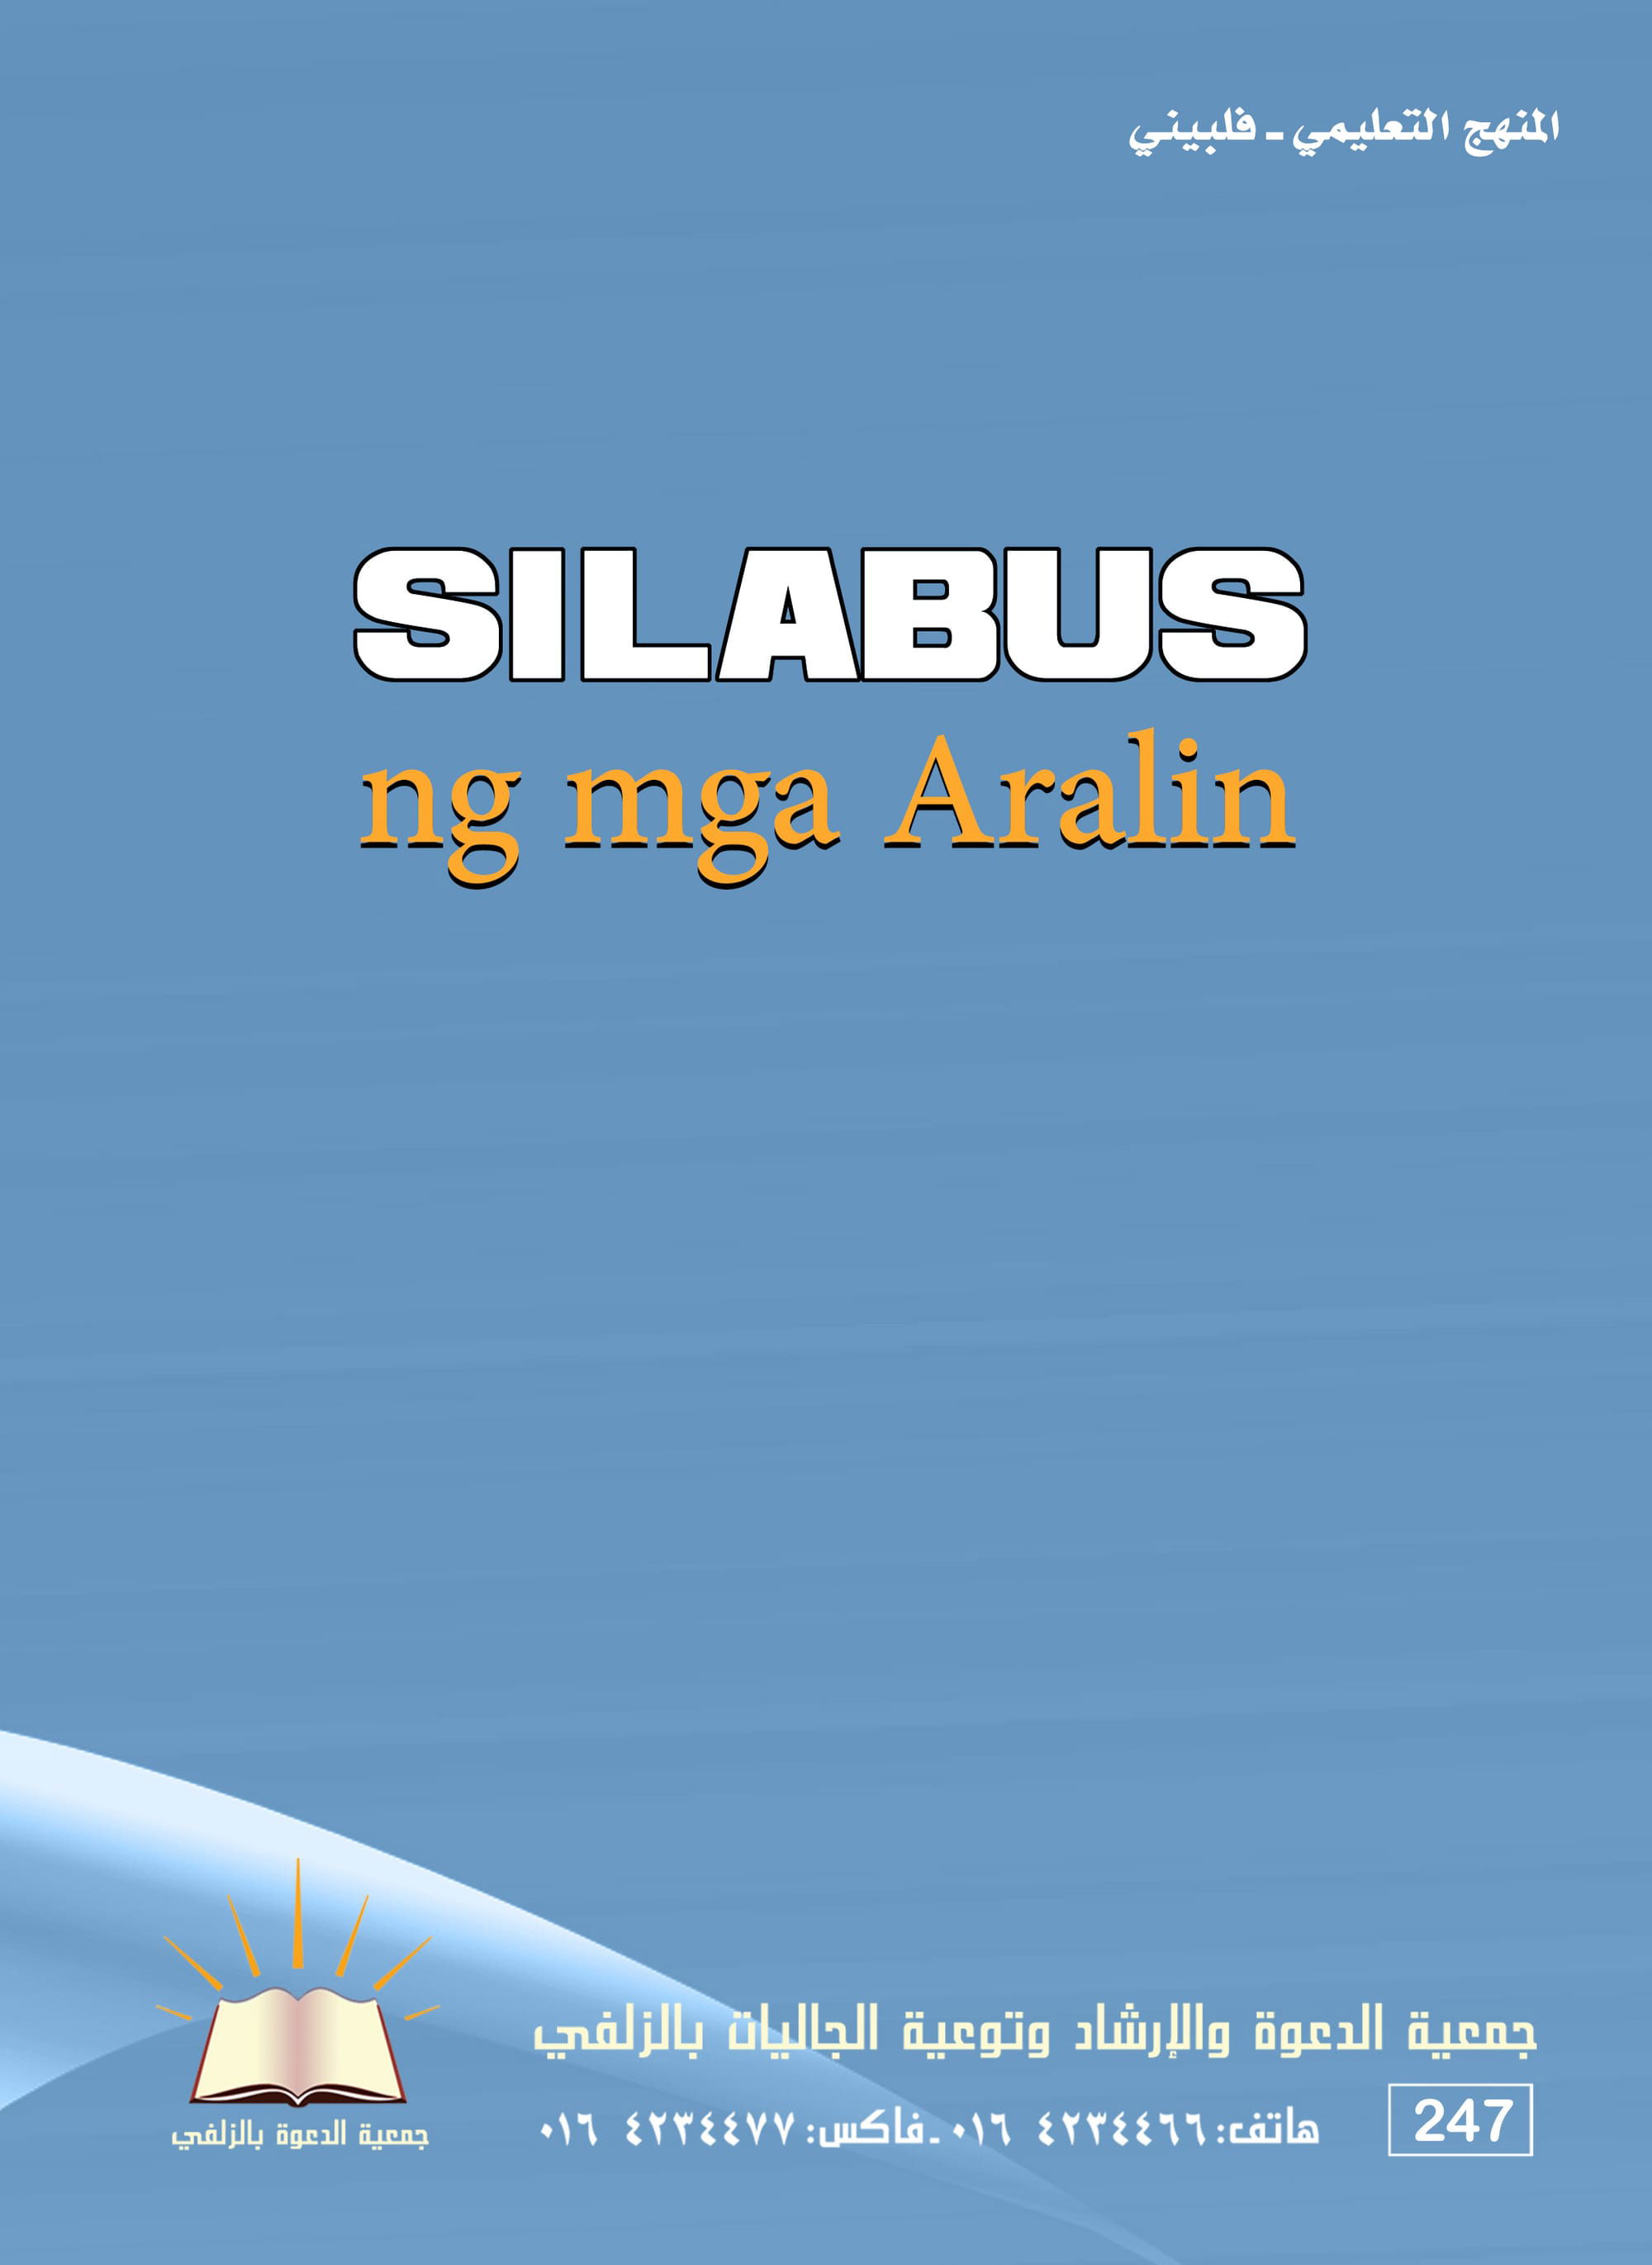 Silabus ng mga Aralin sa Islam Para sa Mag-anak at Lipunan - المنهج التعليمي